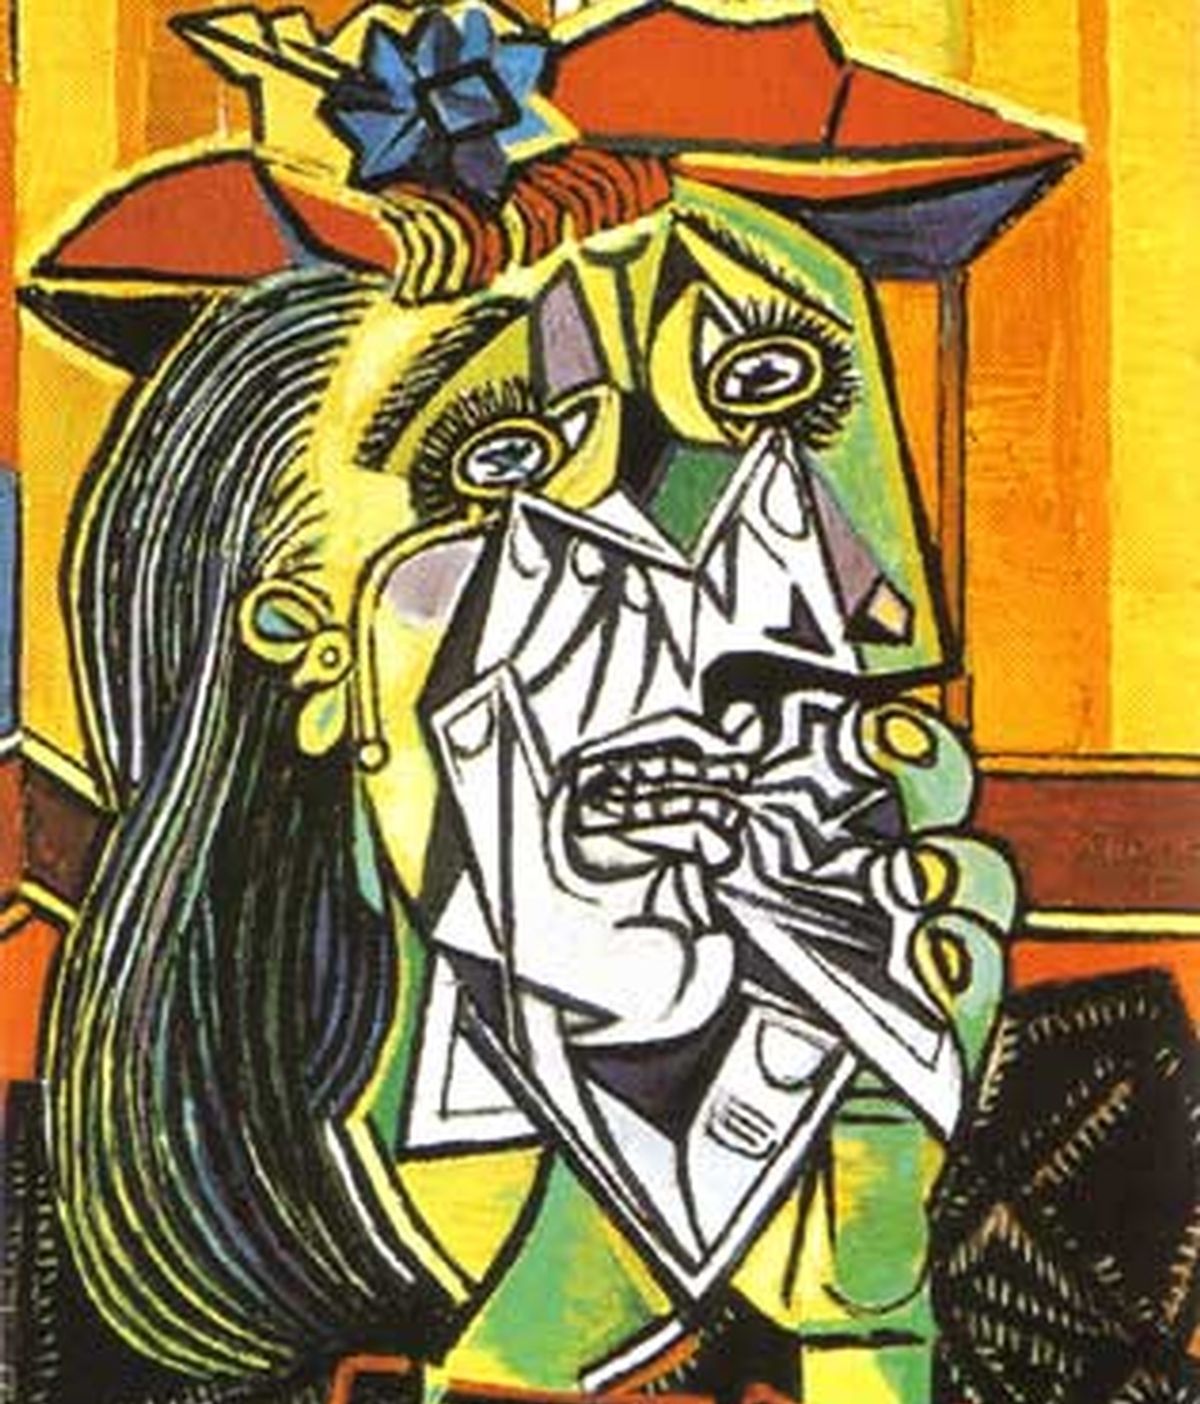 Cuadro de Picasso "Mujer llorando"